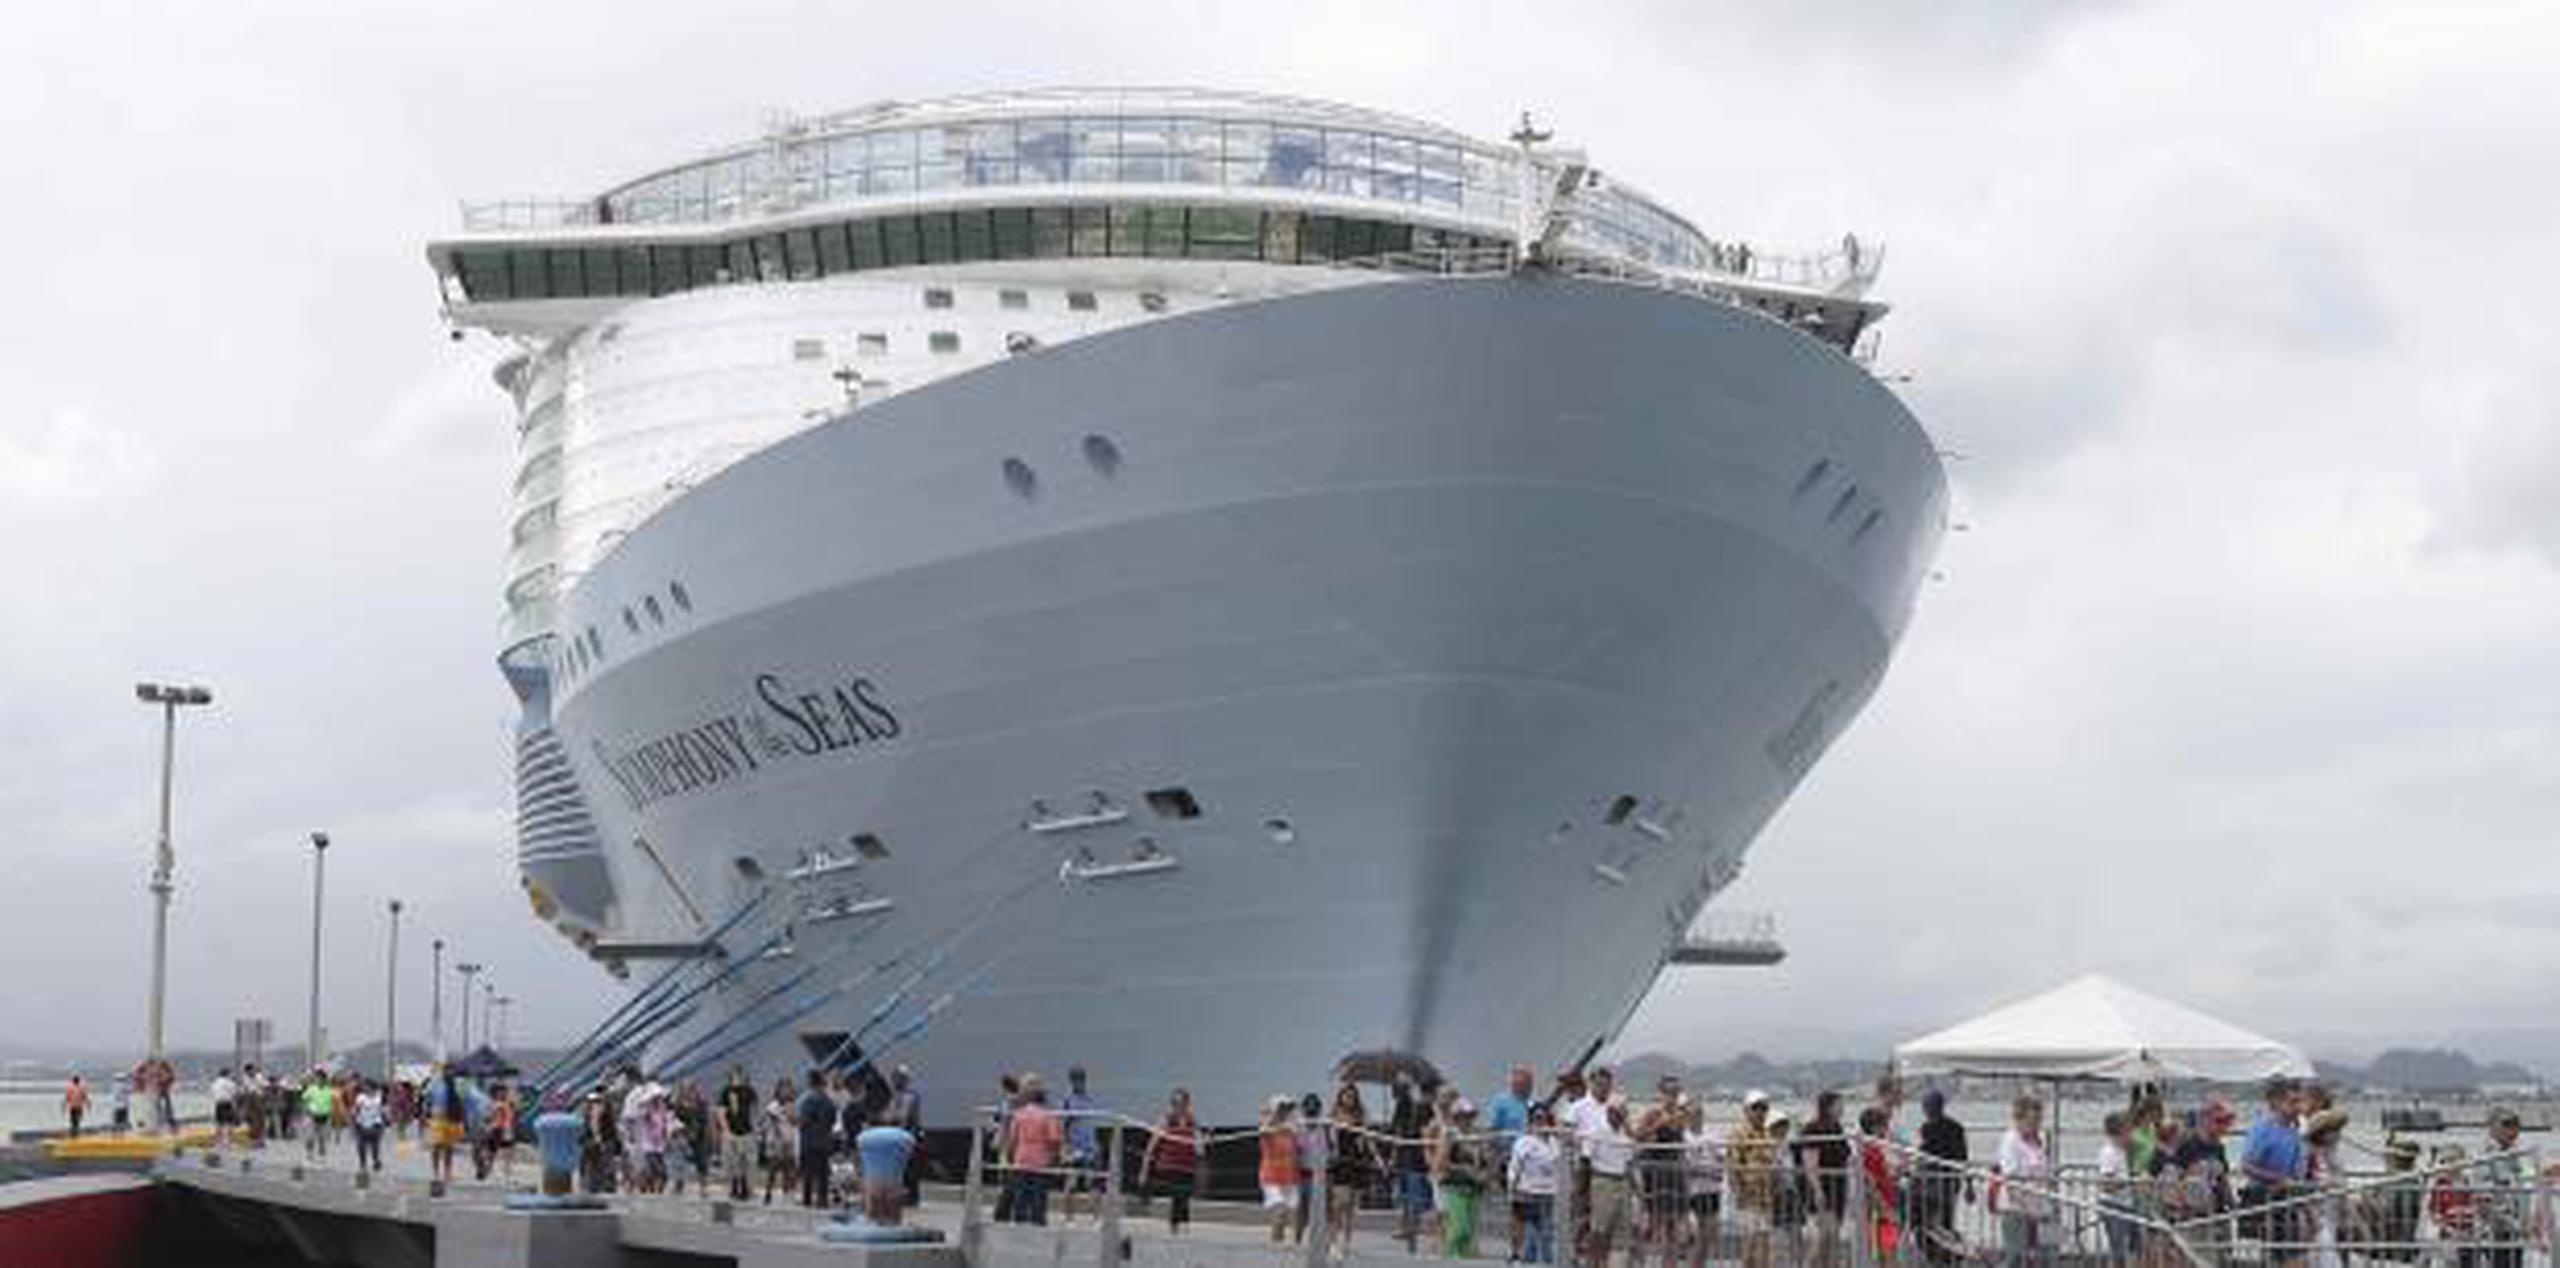 El crucero Symphony of the Seas adelantó su itinerario y arribará hoy, martes. (Archivo)